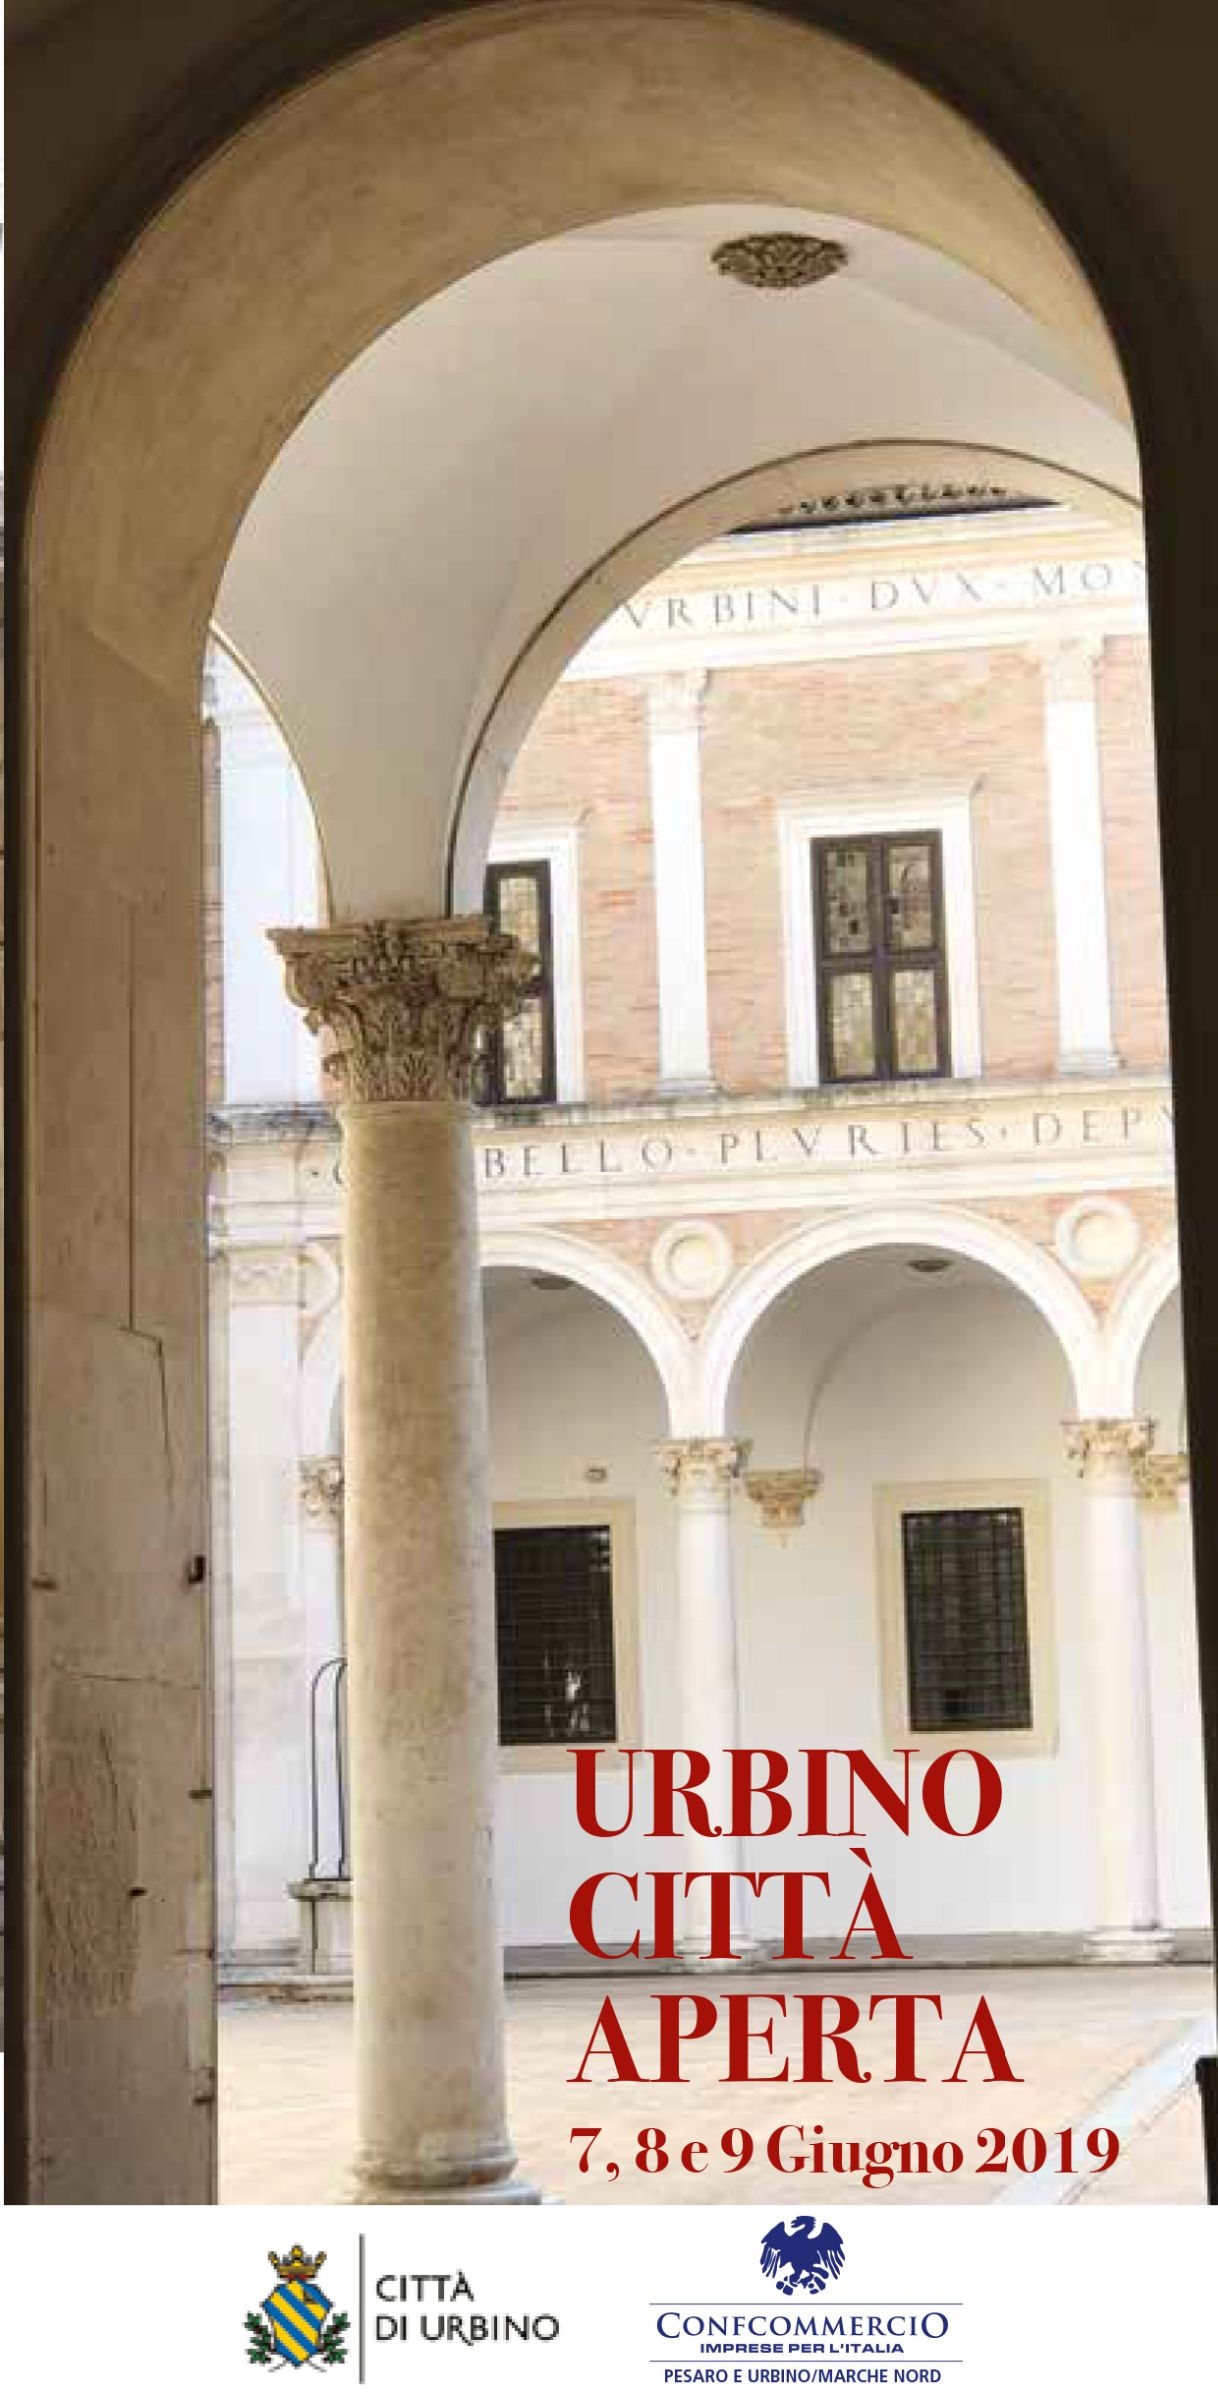 Urbino Città Aperta 